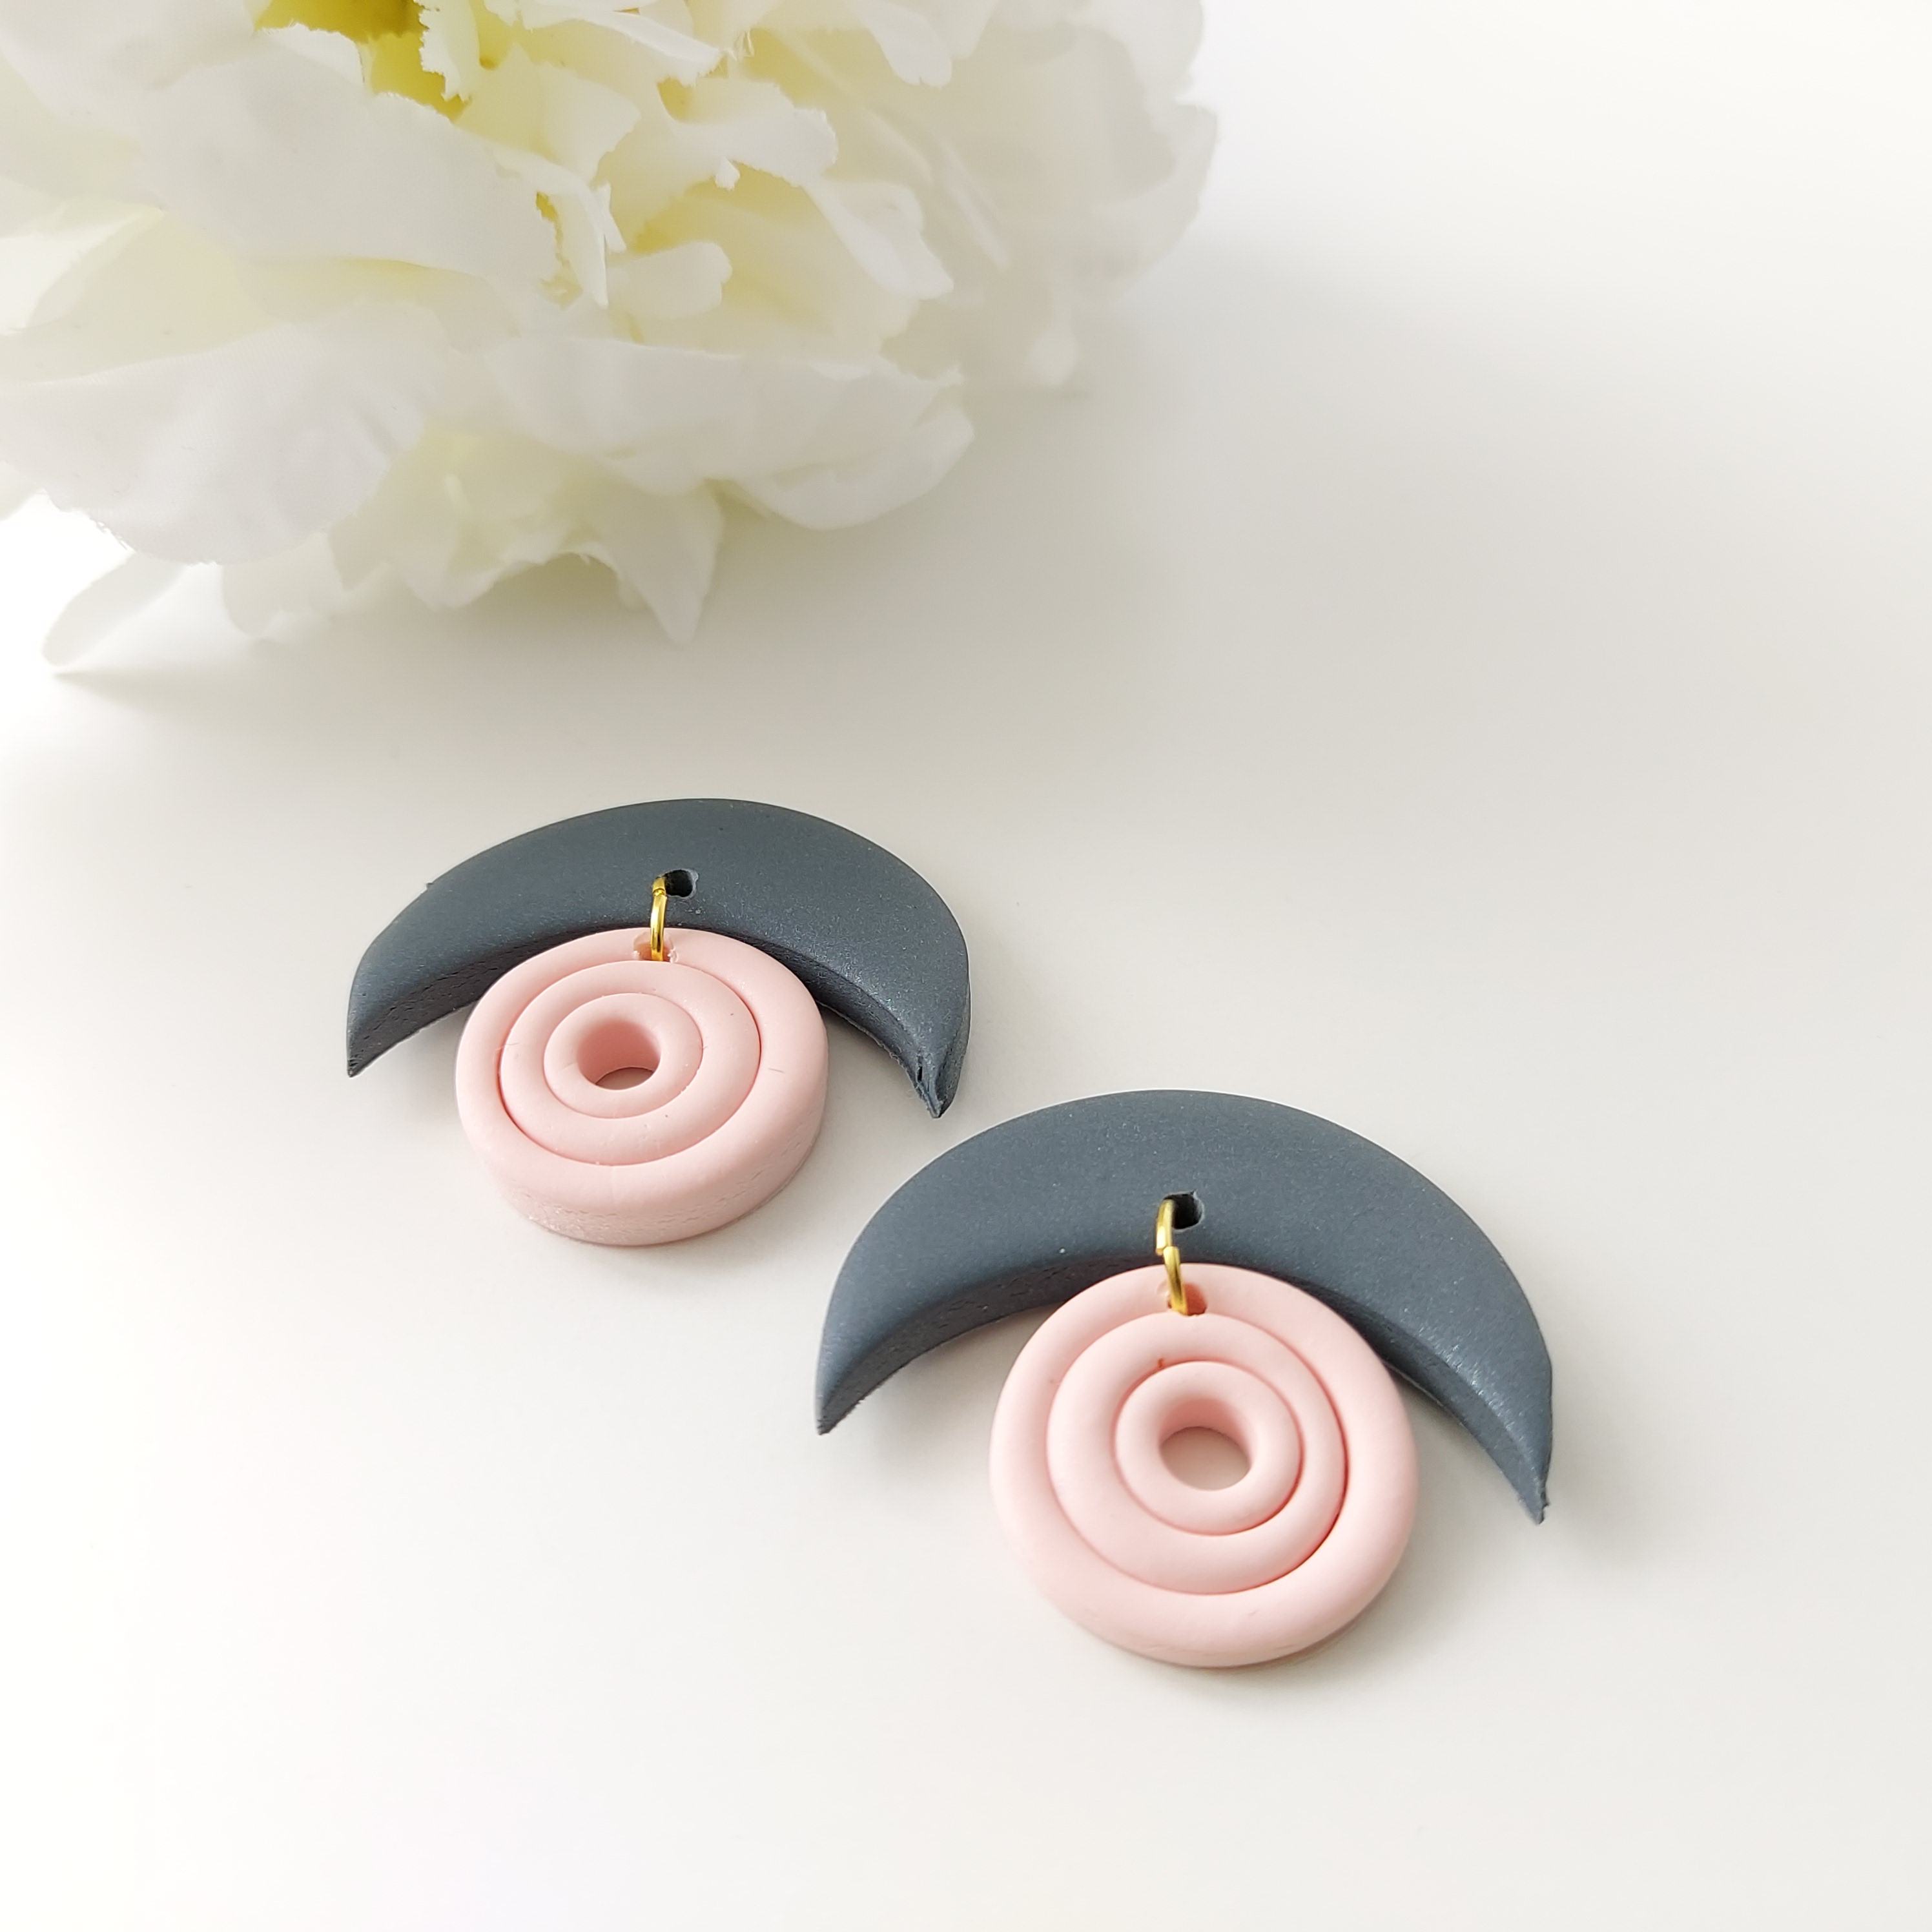 Polymer Clay Earrings - Pink Grey Stud Earrings